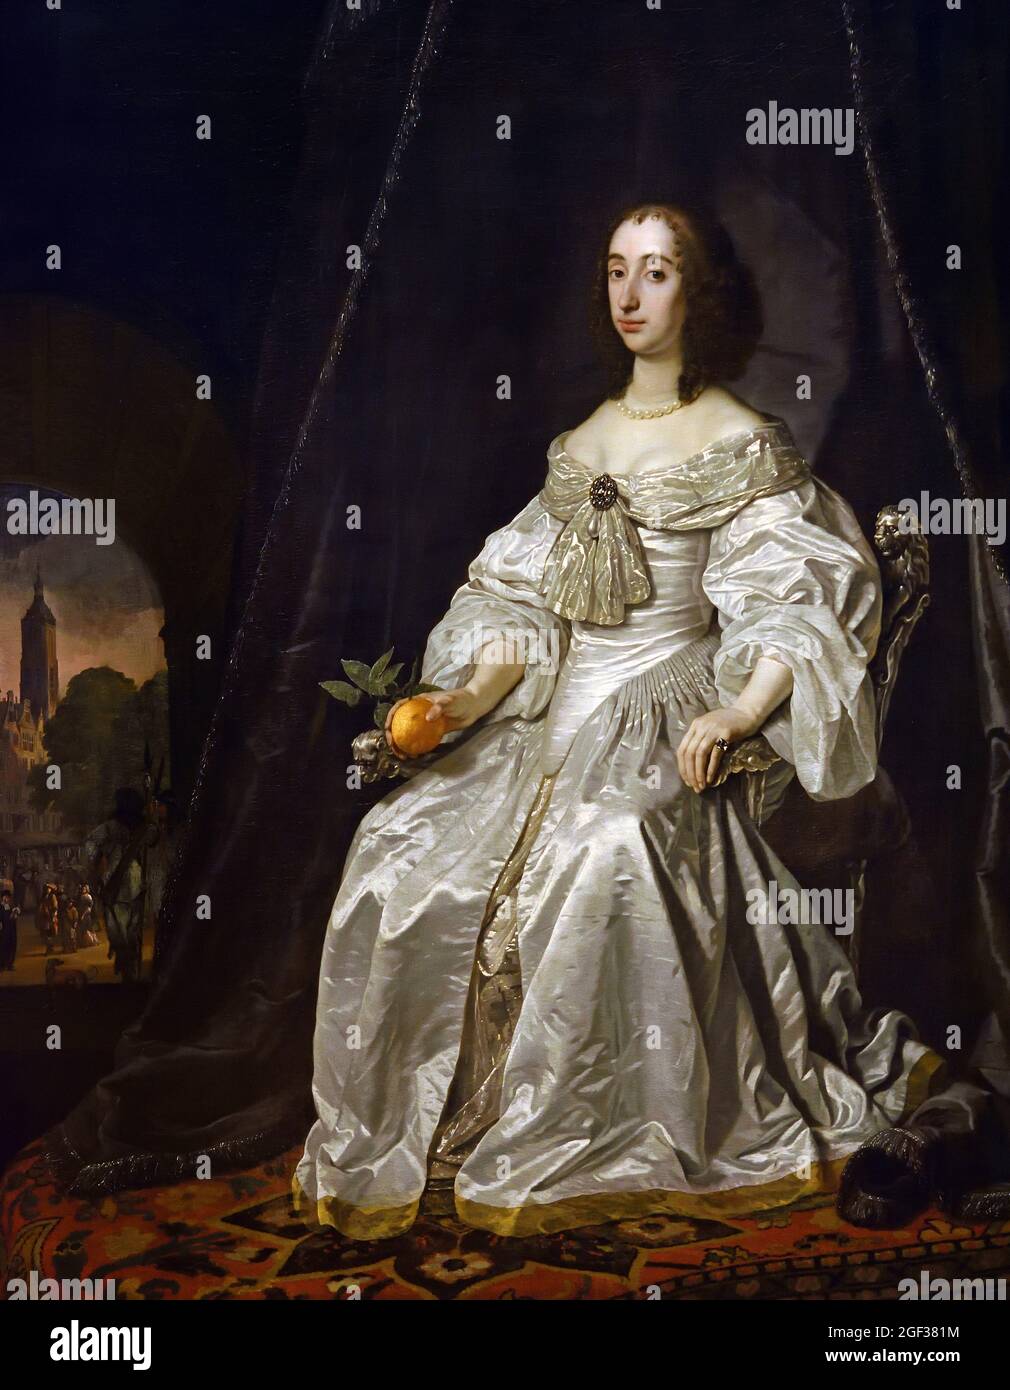 Mary Stuart, Prinzessin von Oranien, als Witwe von Wilhelm II., 1652 von Bartholomeus van der Helst, Öl auf Leinwand, Weiß ist die Farbe der Trauer für Menschen von königlichem Blut. Ihr Mann, der Stadtholder Wilhelm II., starb 1650 an Pocken. Zwei Jahre später porträtierte er als seine Witwe, die eine Orange in der Hand hielt, um auf das Haus von Orange Bezug zu nehmen. Hintergrund Stadtholdertor des Binnenhofs mit Blick auf Den Haag. Niederländisch, Niederlande. Stockfoto